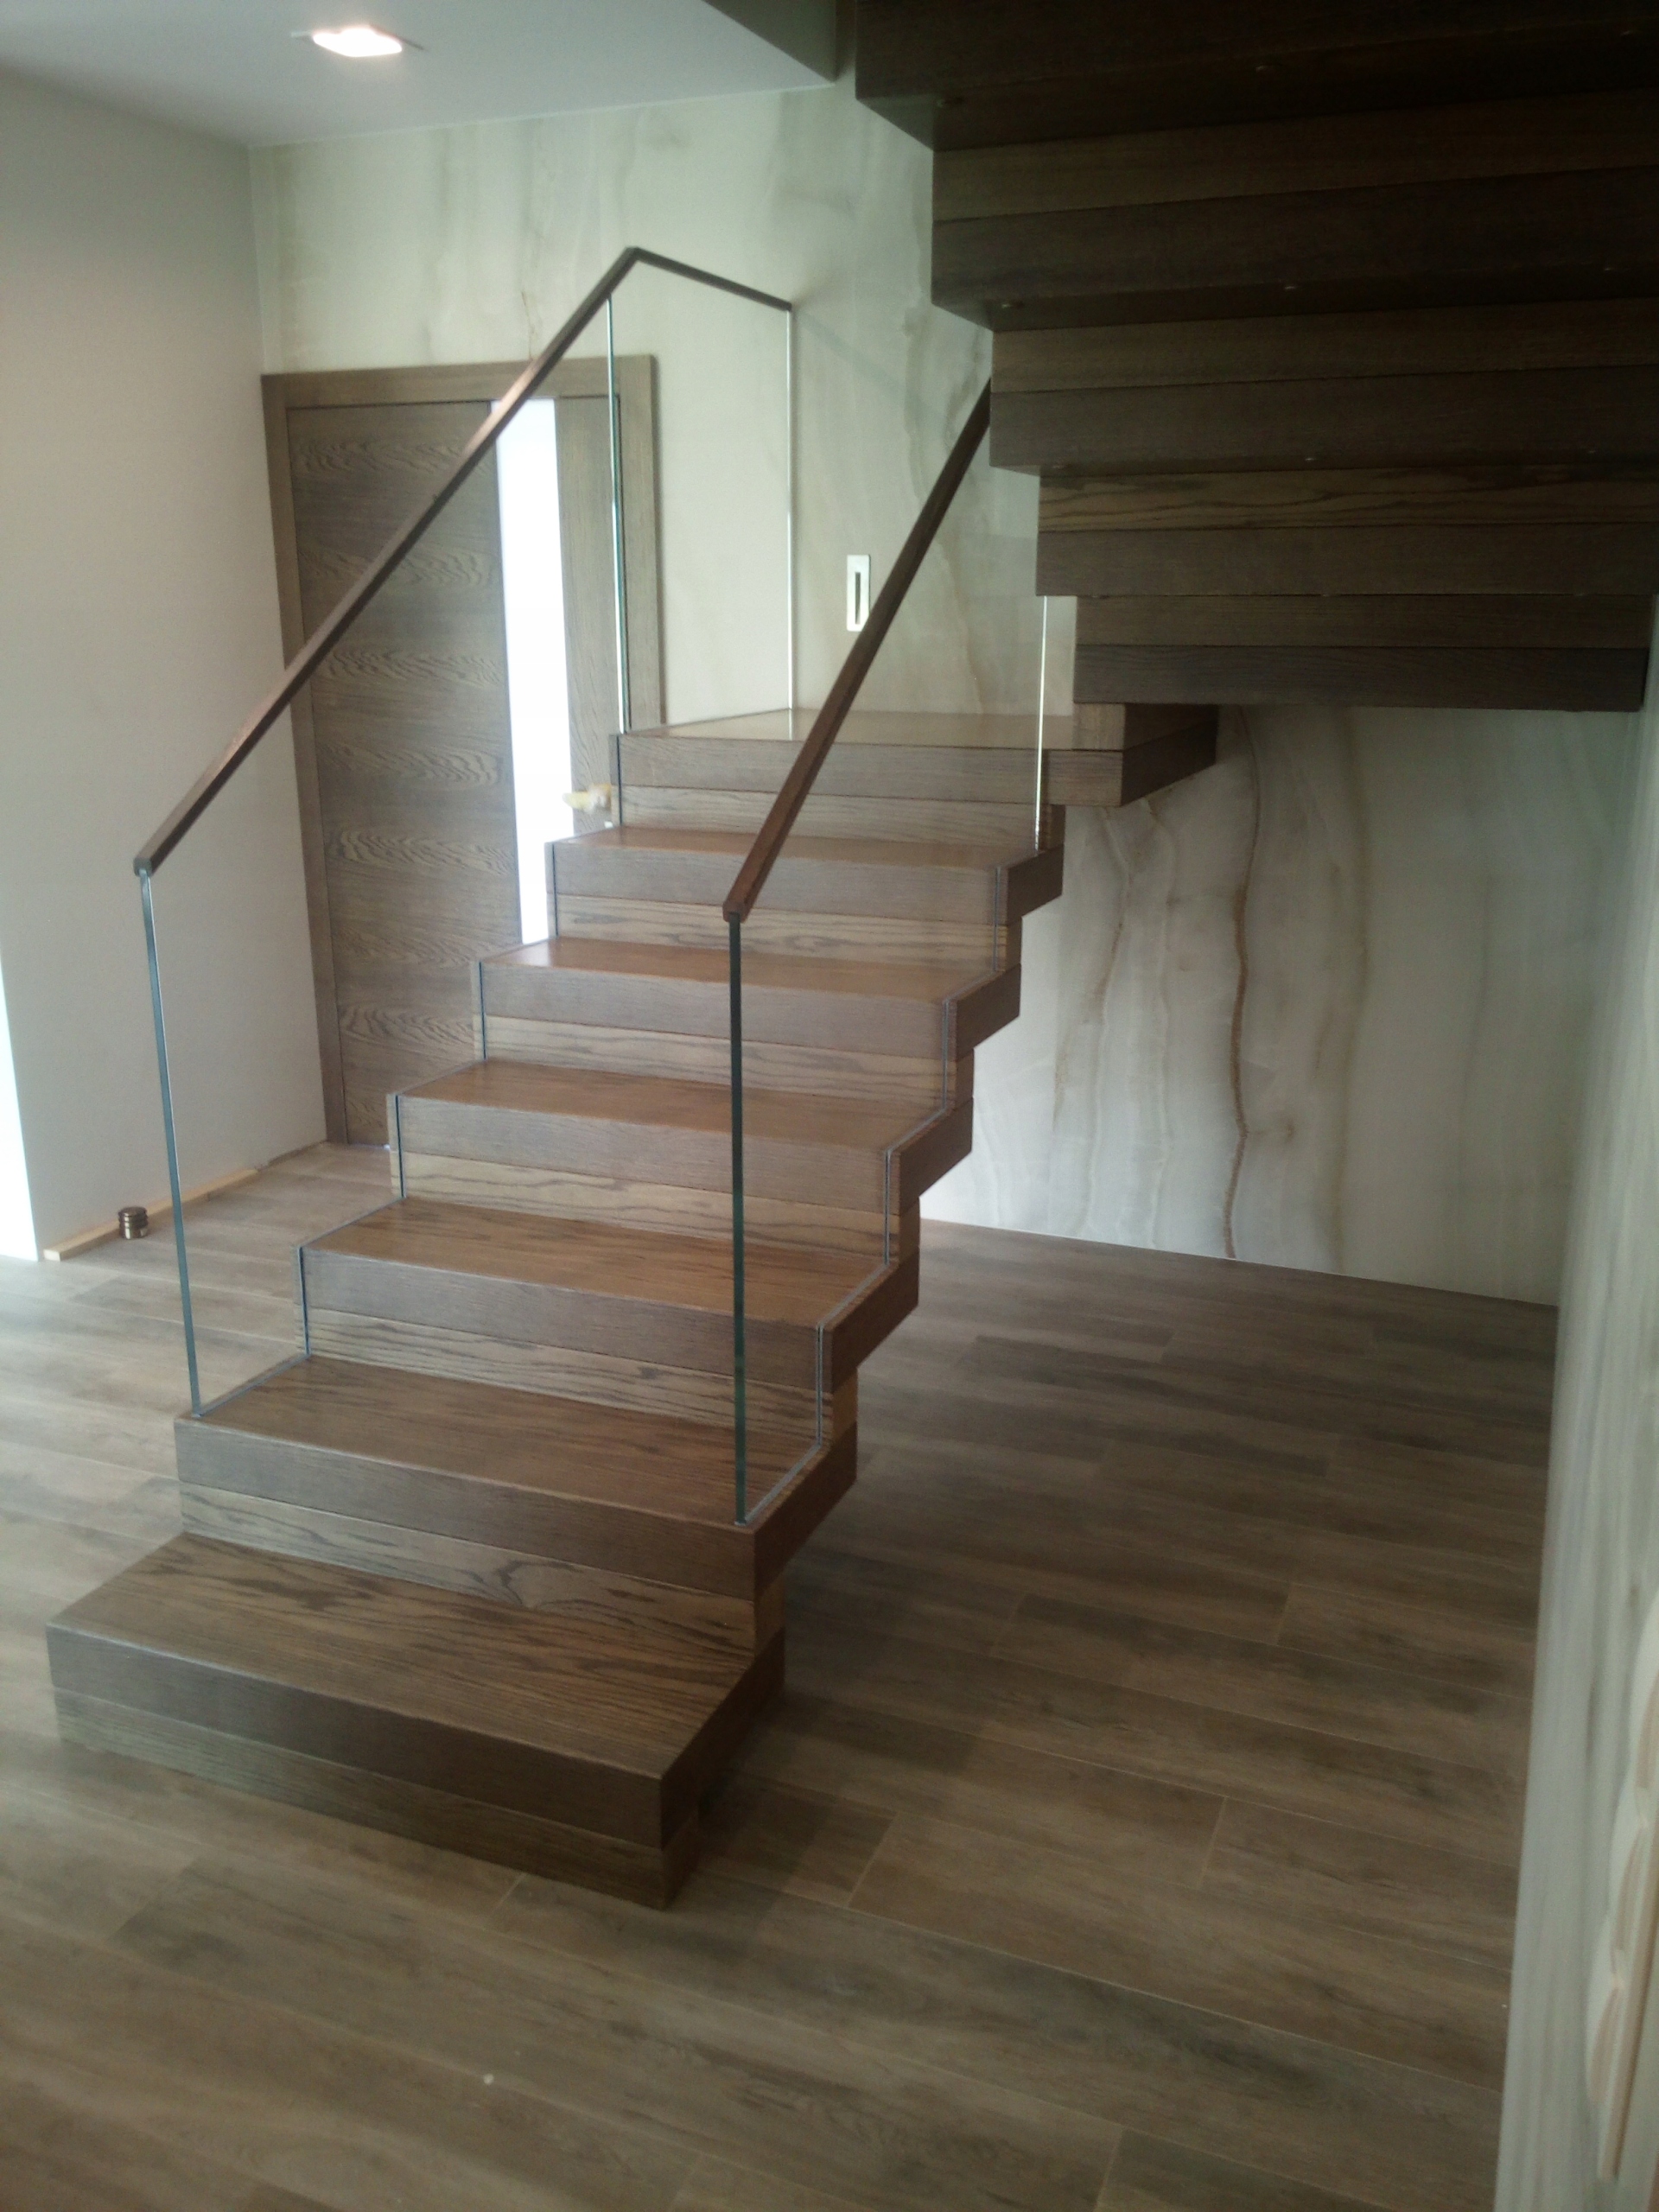 schody-drewniane-dywanowe-balustrada-szklana-7588837603-oficjalne